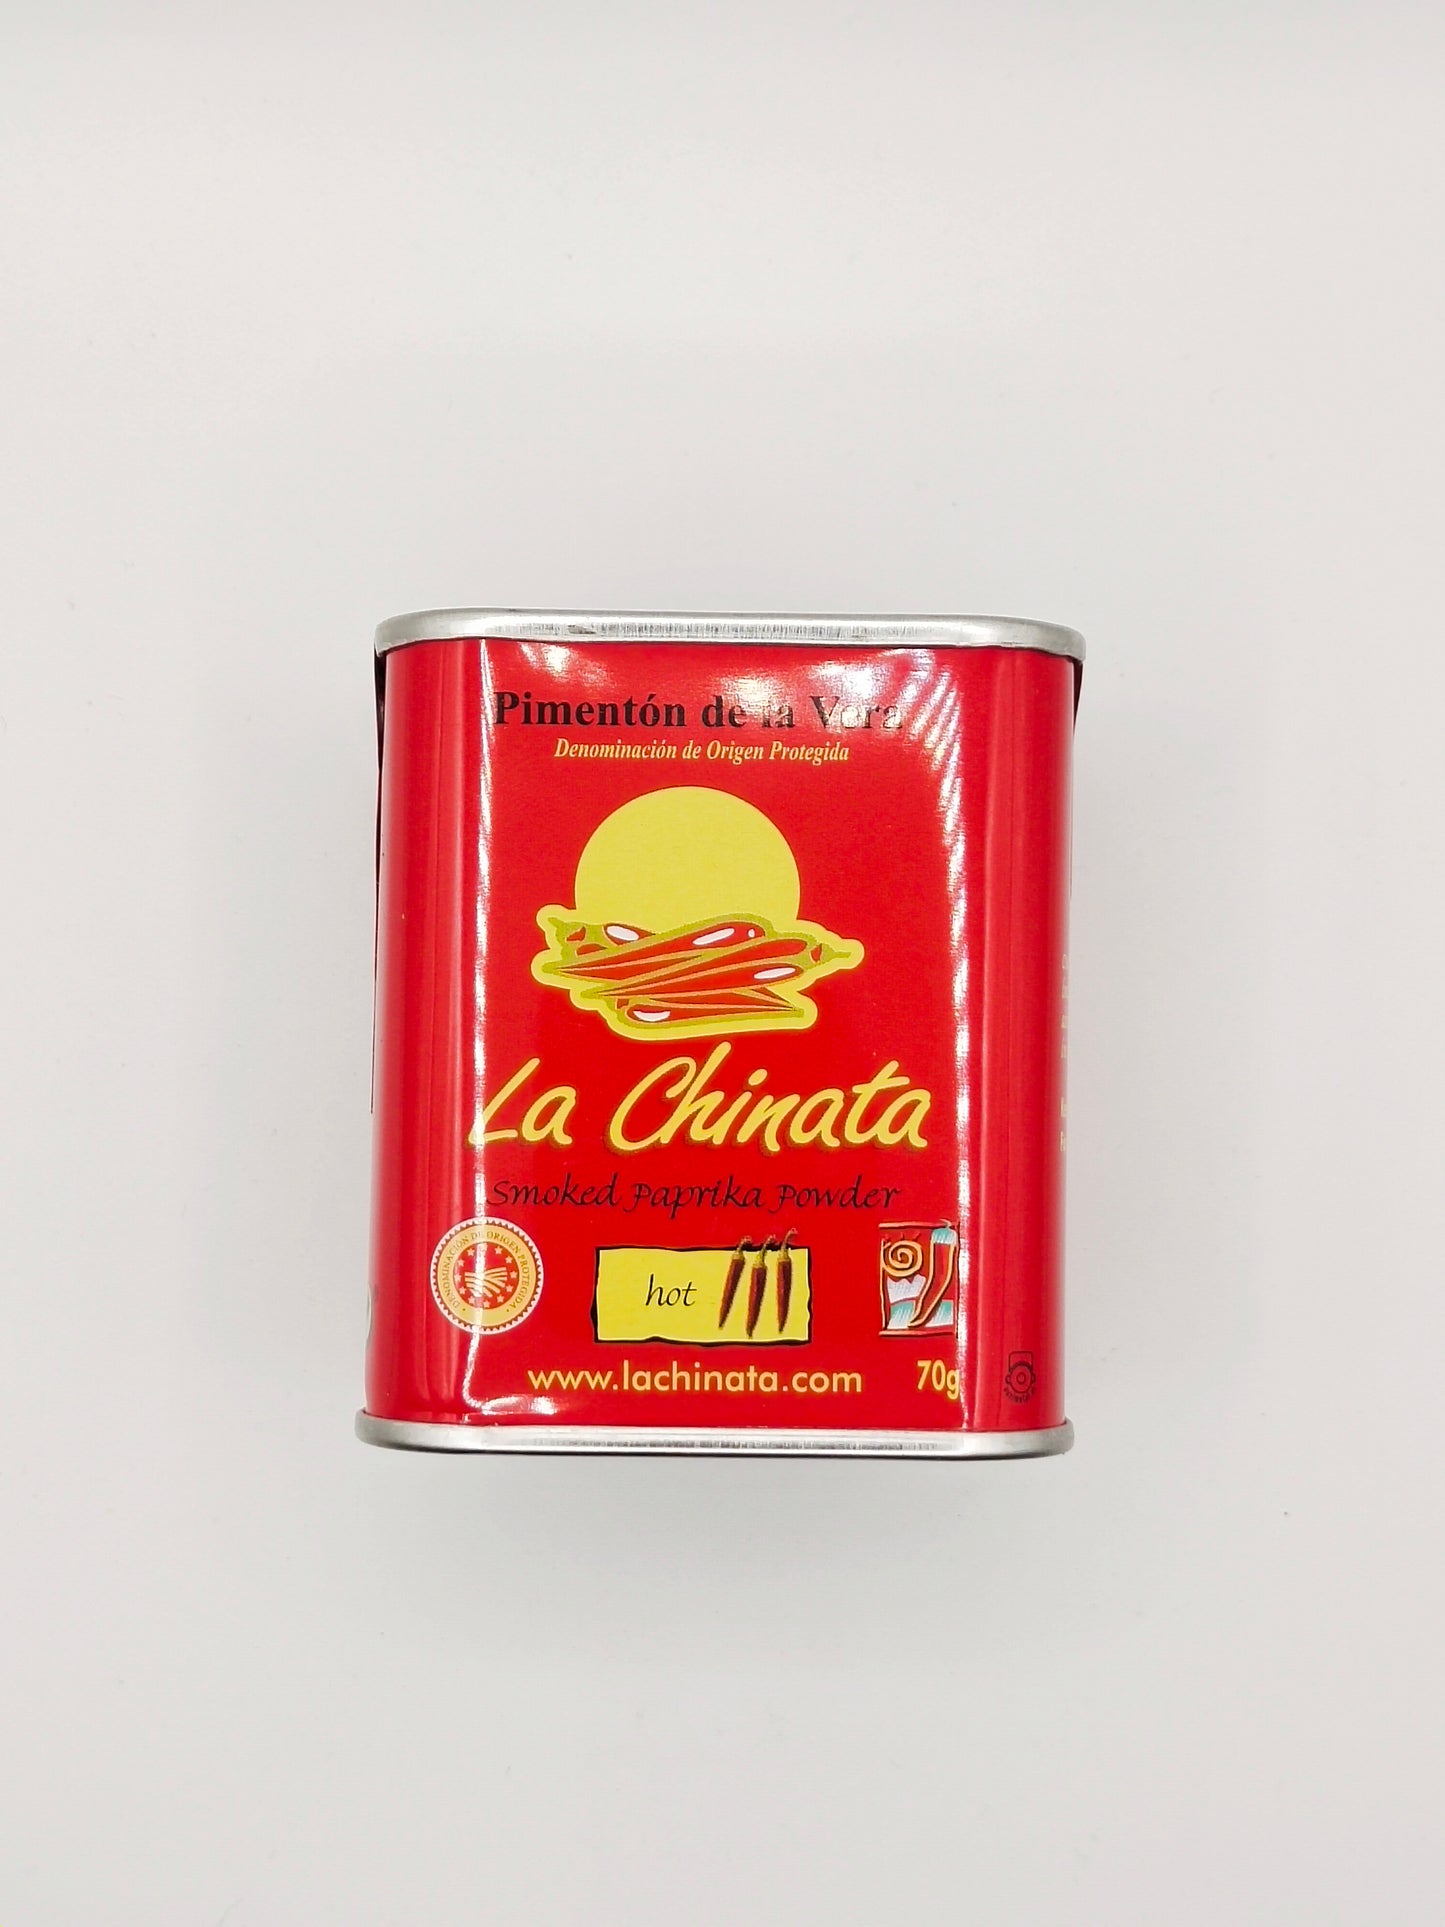 La Chinata - Smoked Paprika Hot